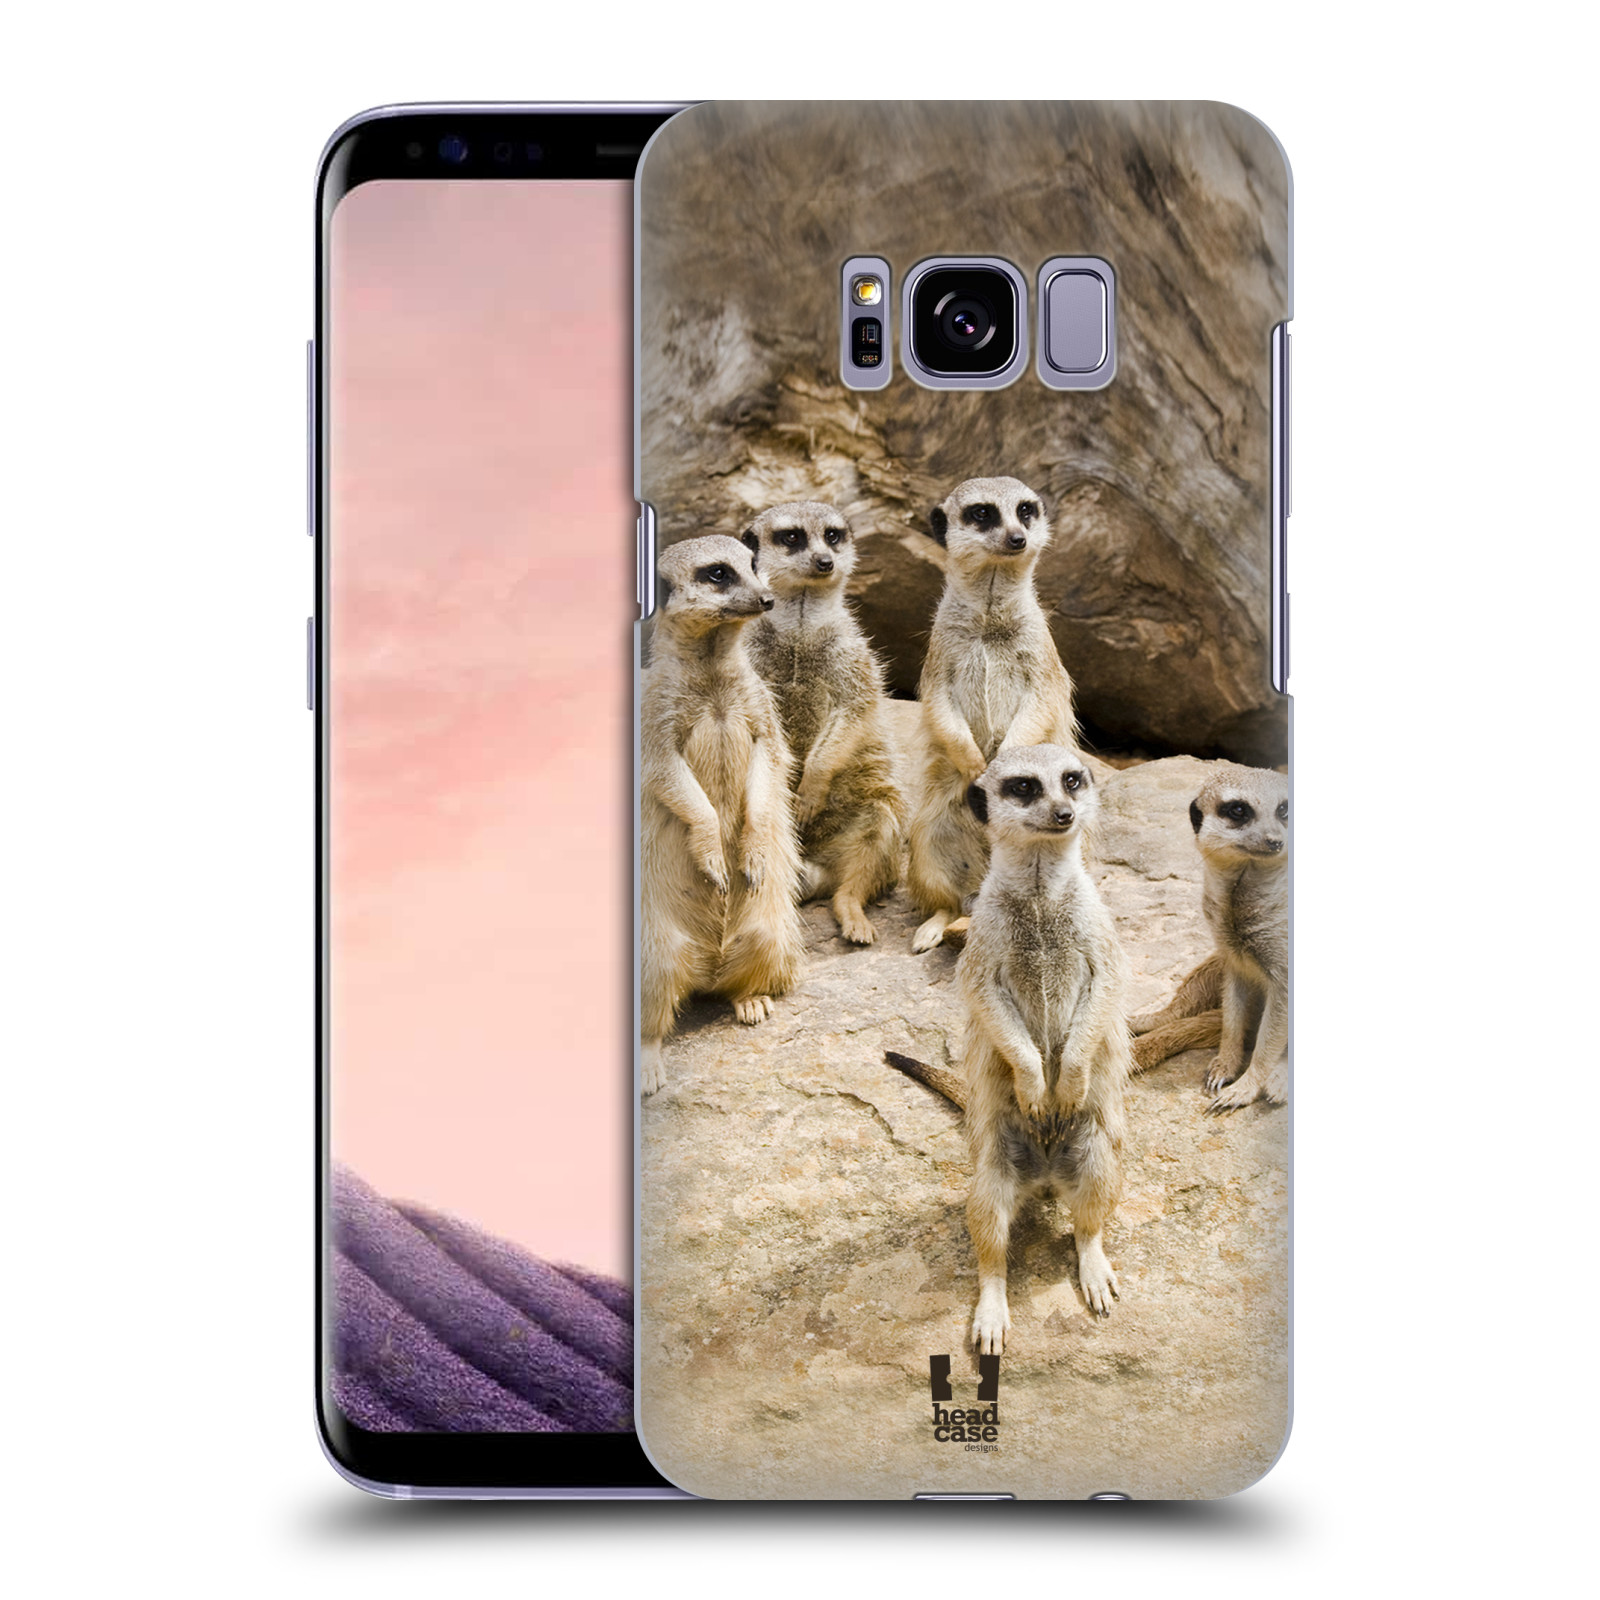 Zadní obal pro mobil Samsung Galaxy S8 PLUS - HEAD CASE - Svět zvířat roztomilé surikaty